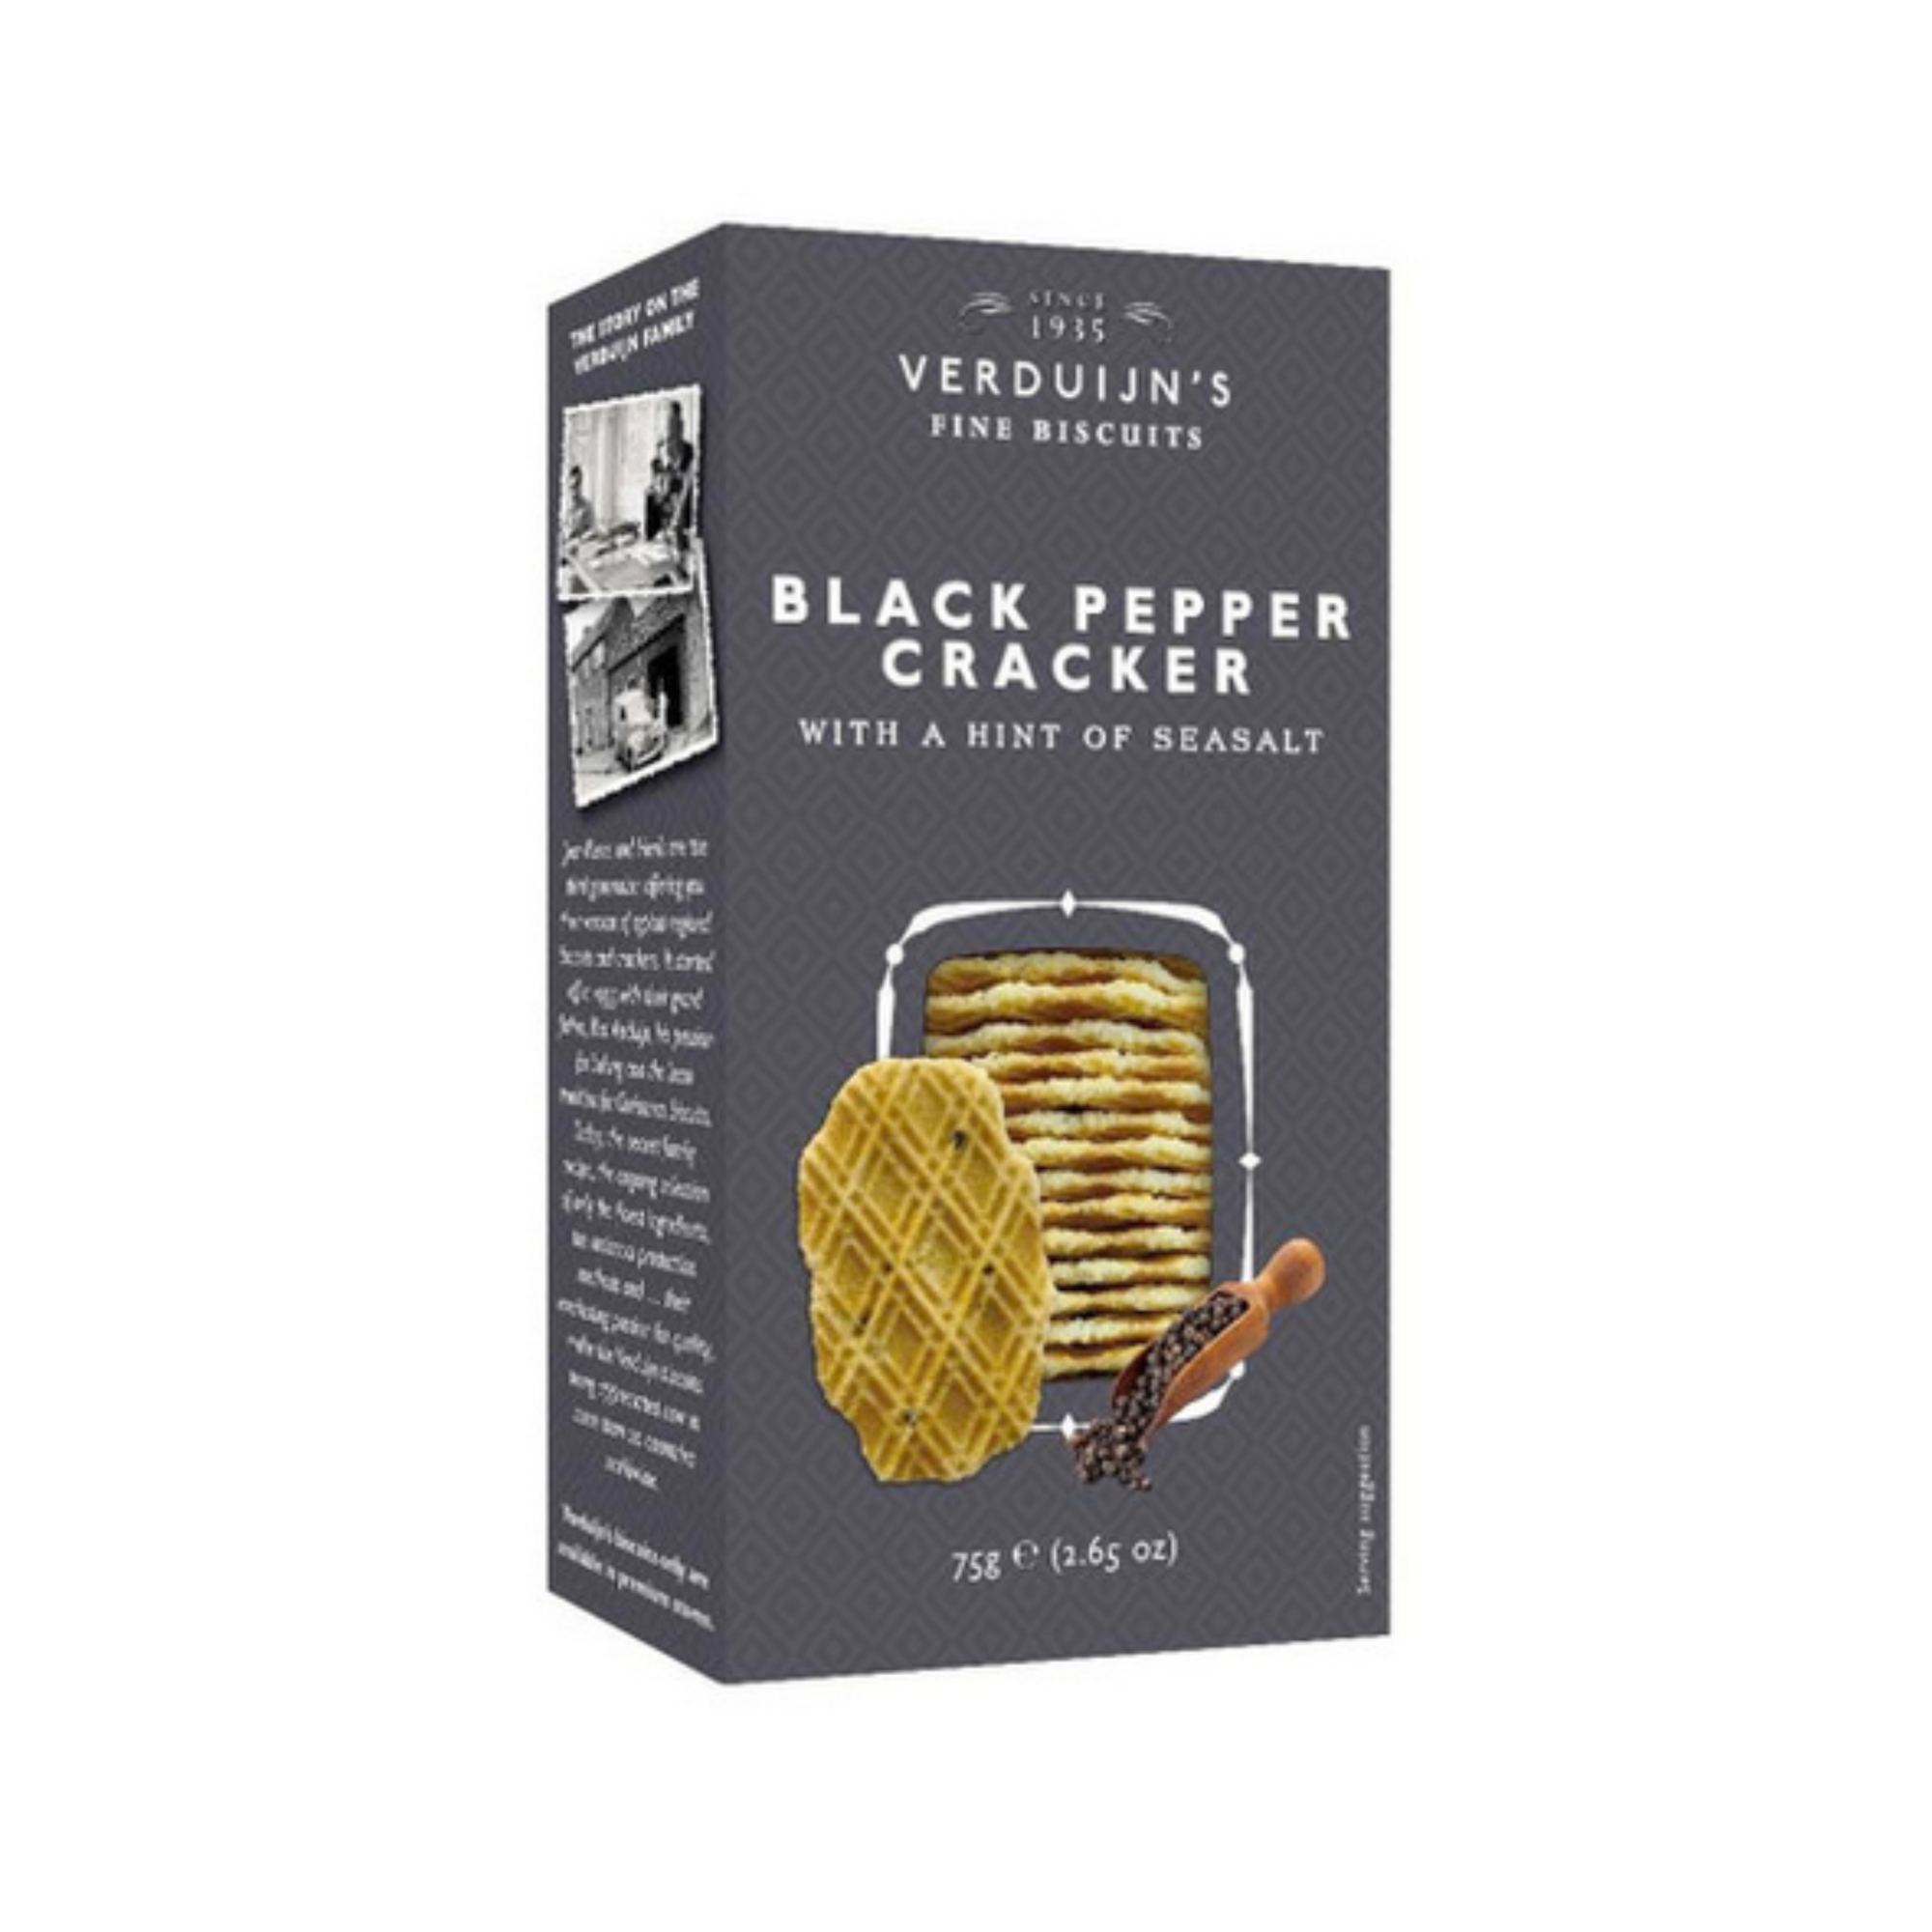 Verduijn's Black Pepper Cracker with a Hint of Sea Salt